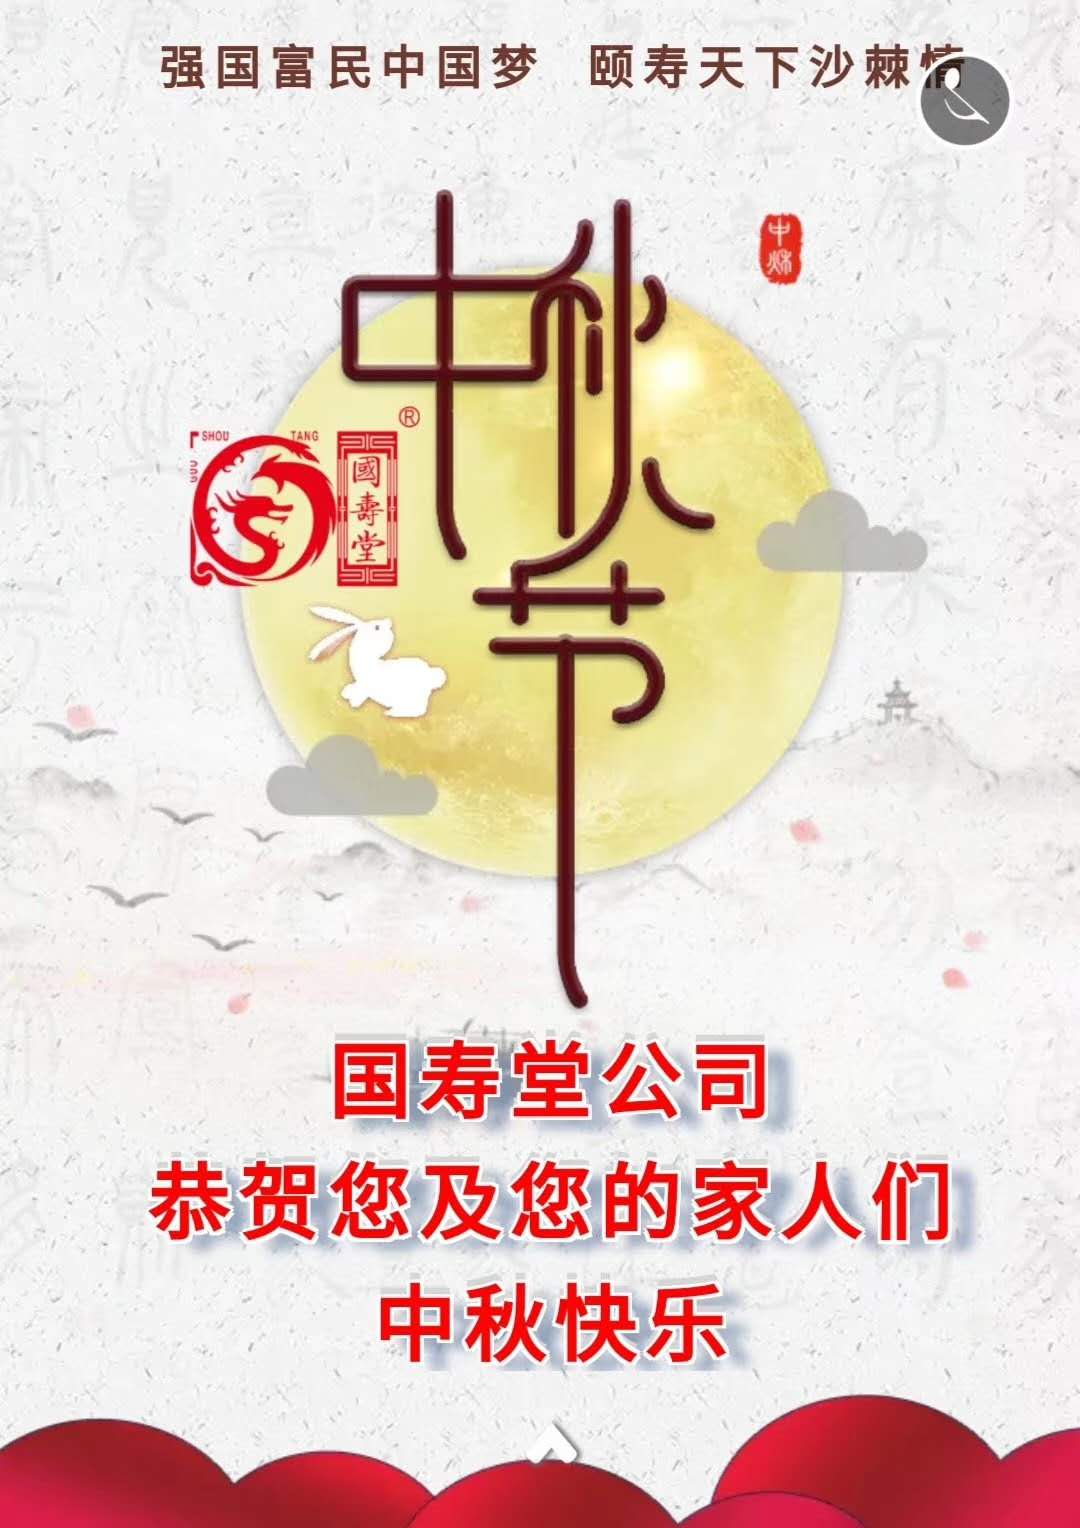 国寿堂公司恭贺您和您的家人中秋节快乐